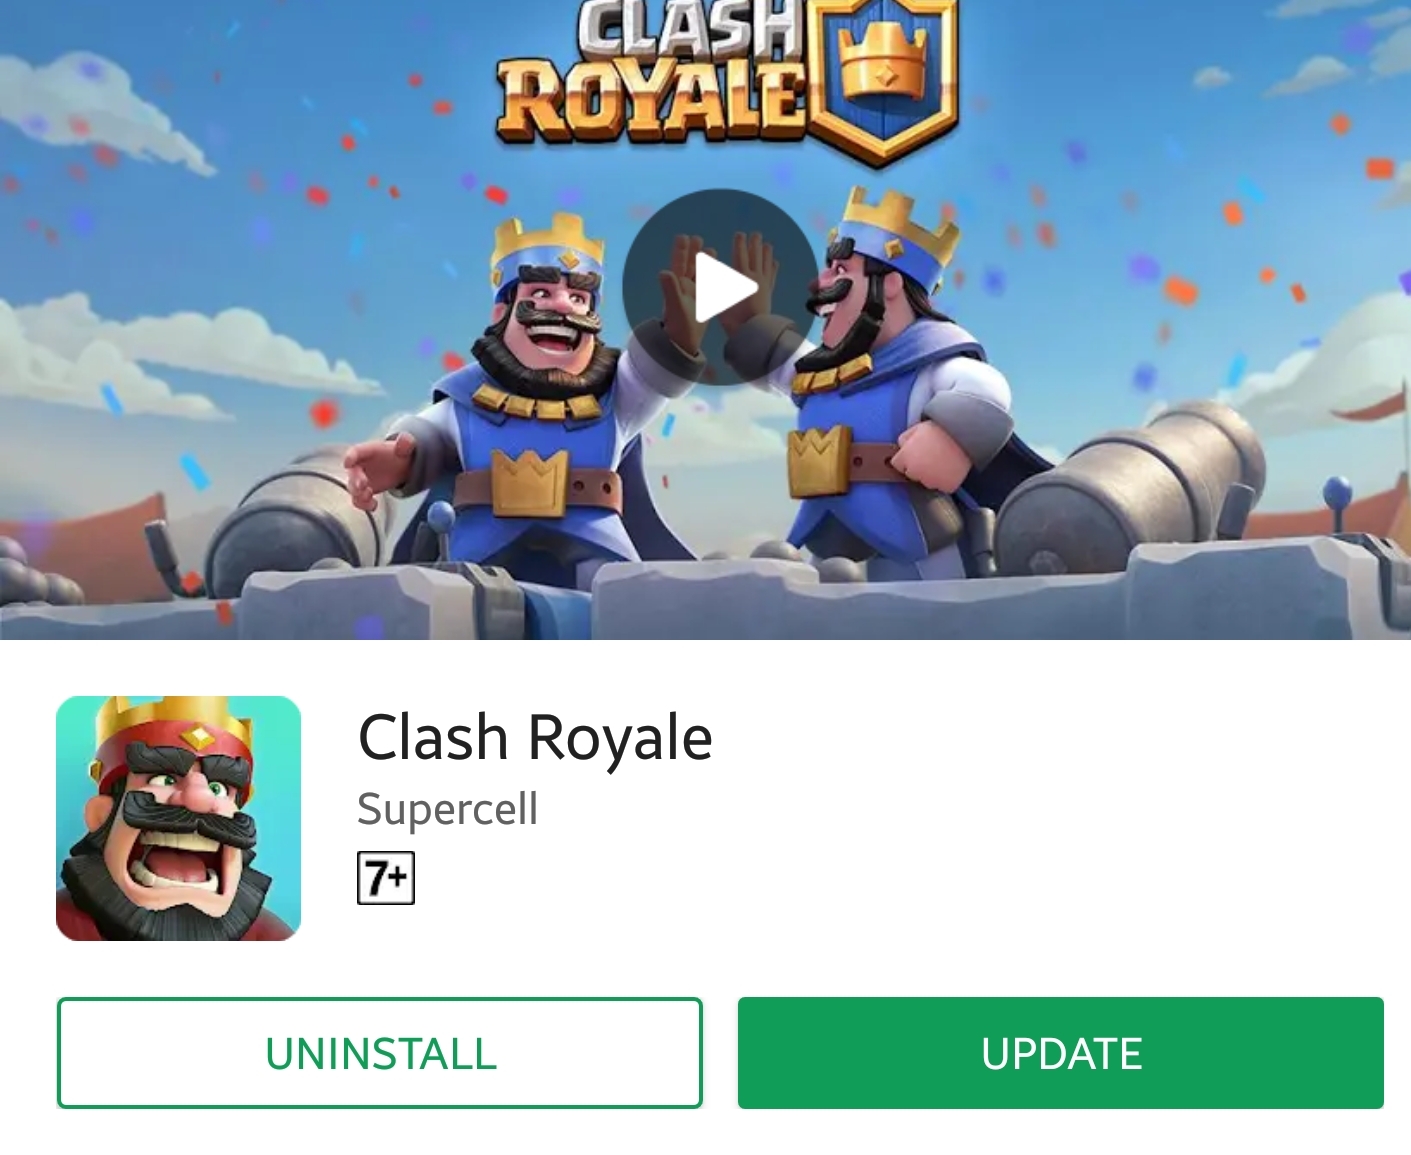 Clash Royale 2.2.1 APk download